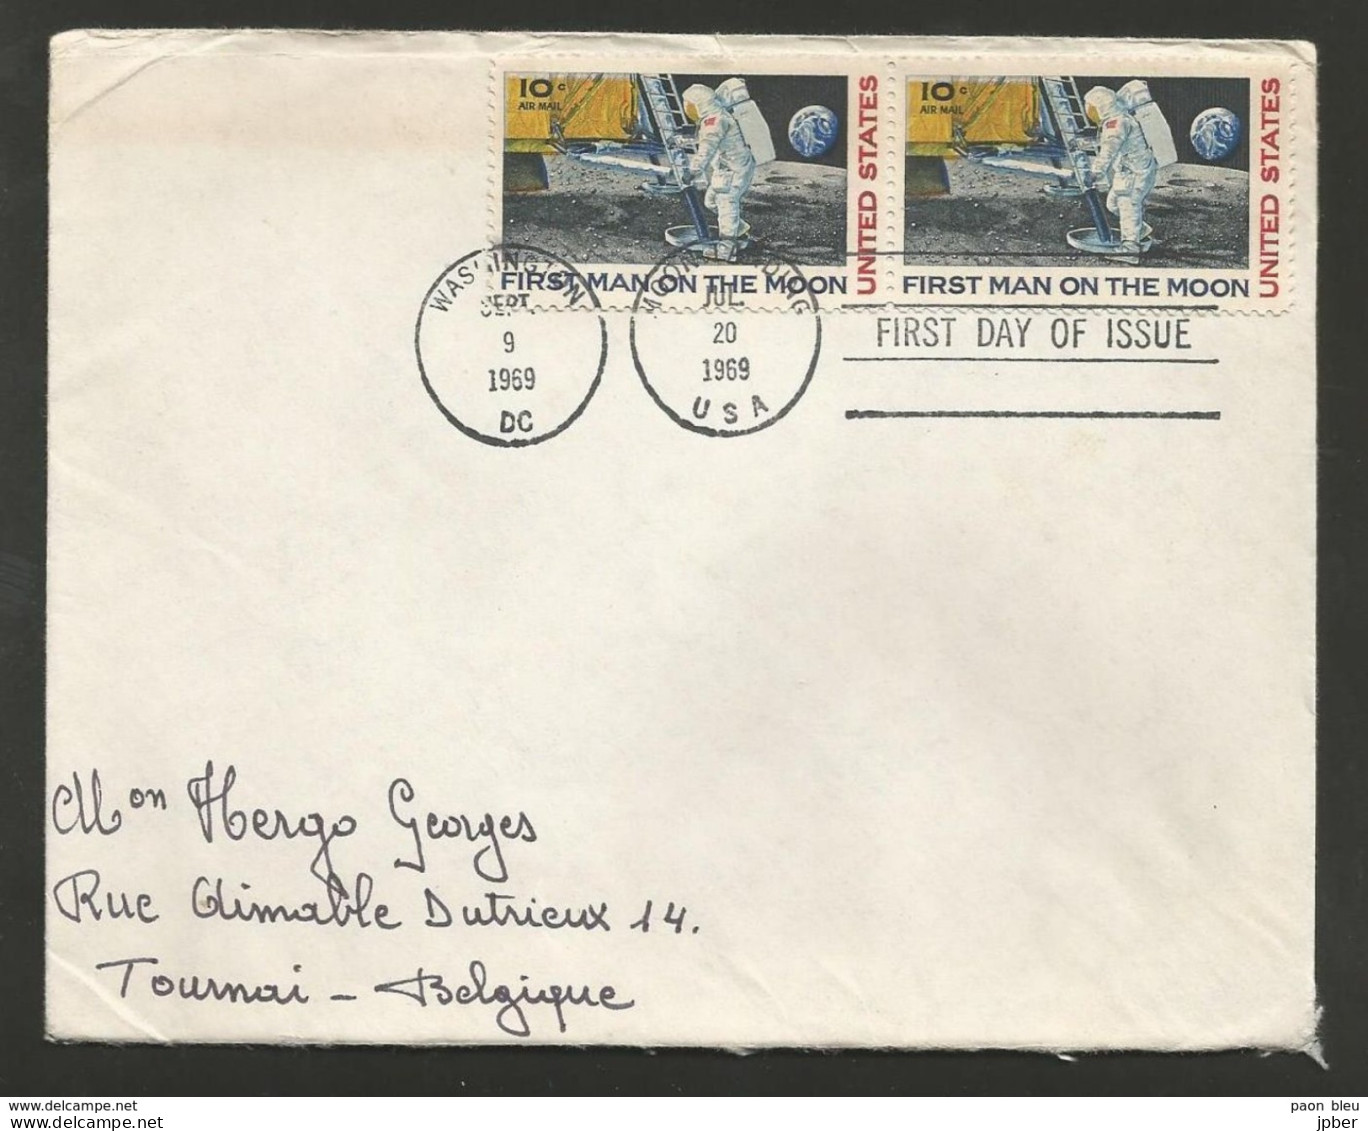 Etats-Unis - Lettre Du 20/7/69 - 1er Pas Sur La Lune - First Man On The Moon - Souvenirkarten